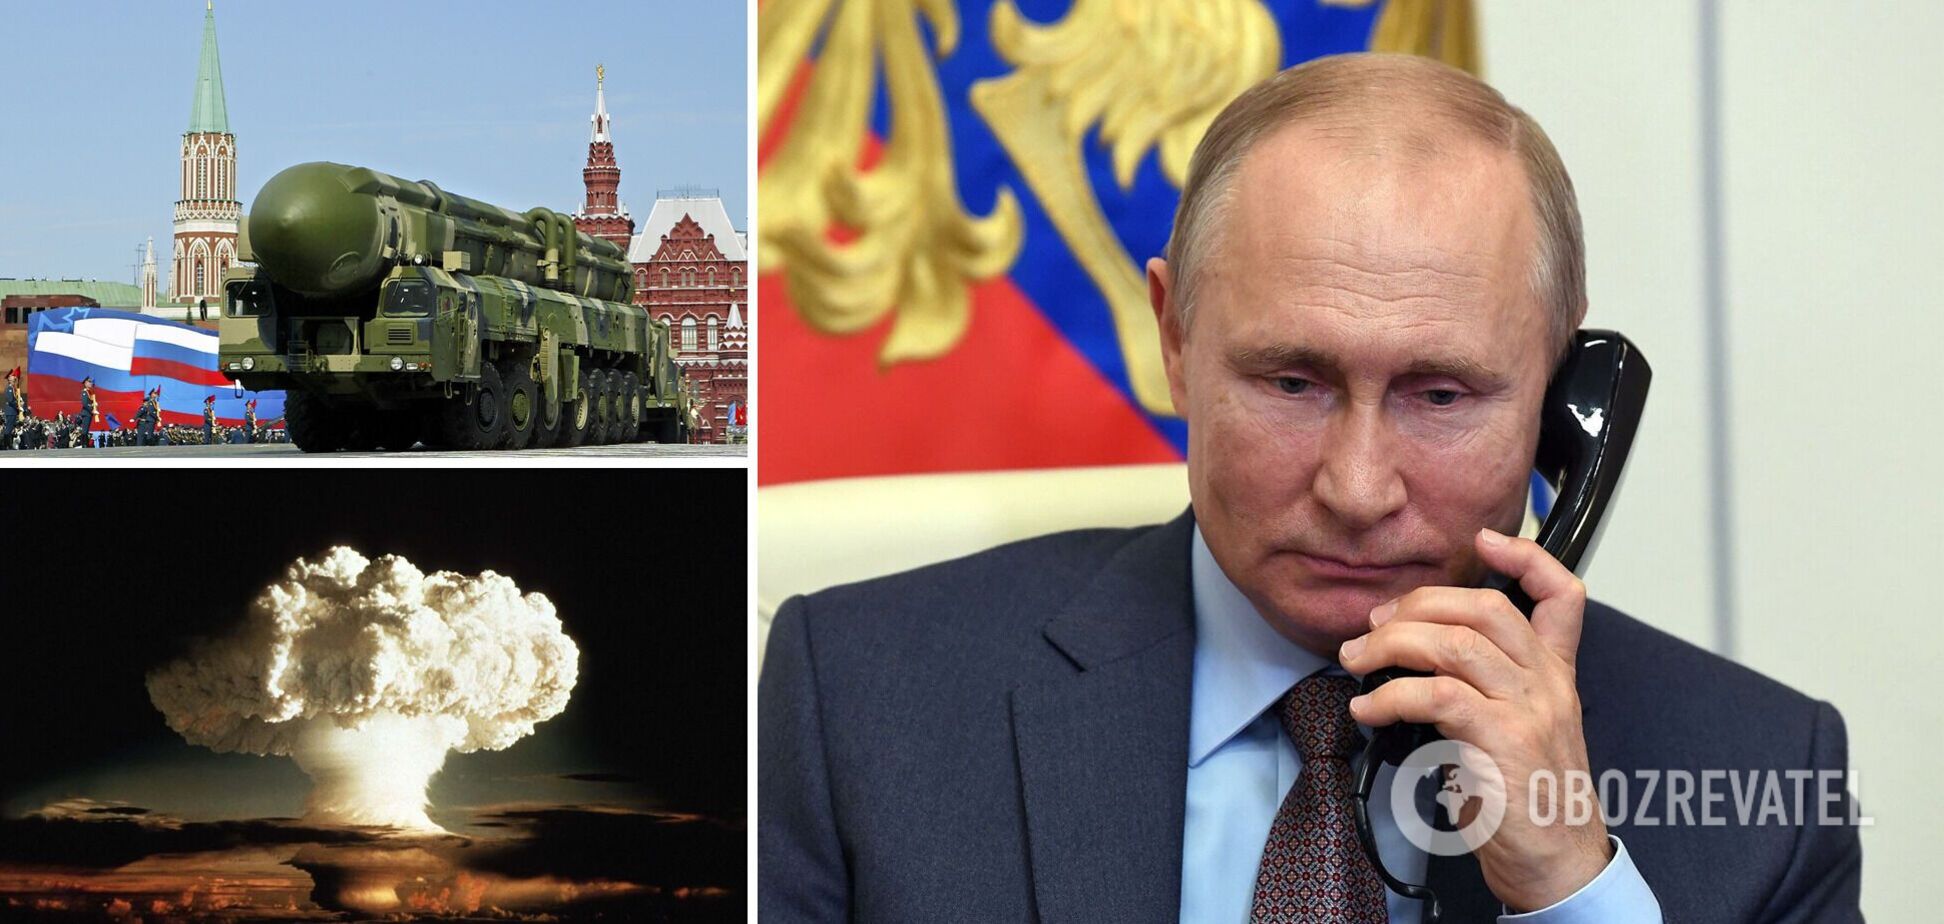 Угроза ядерной войны: Путин создал опасный момент – The Economist